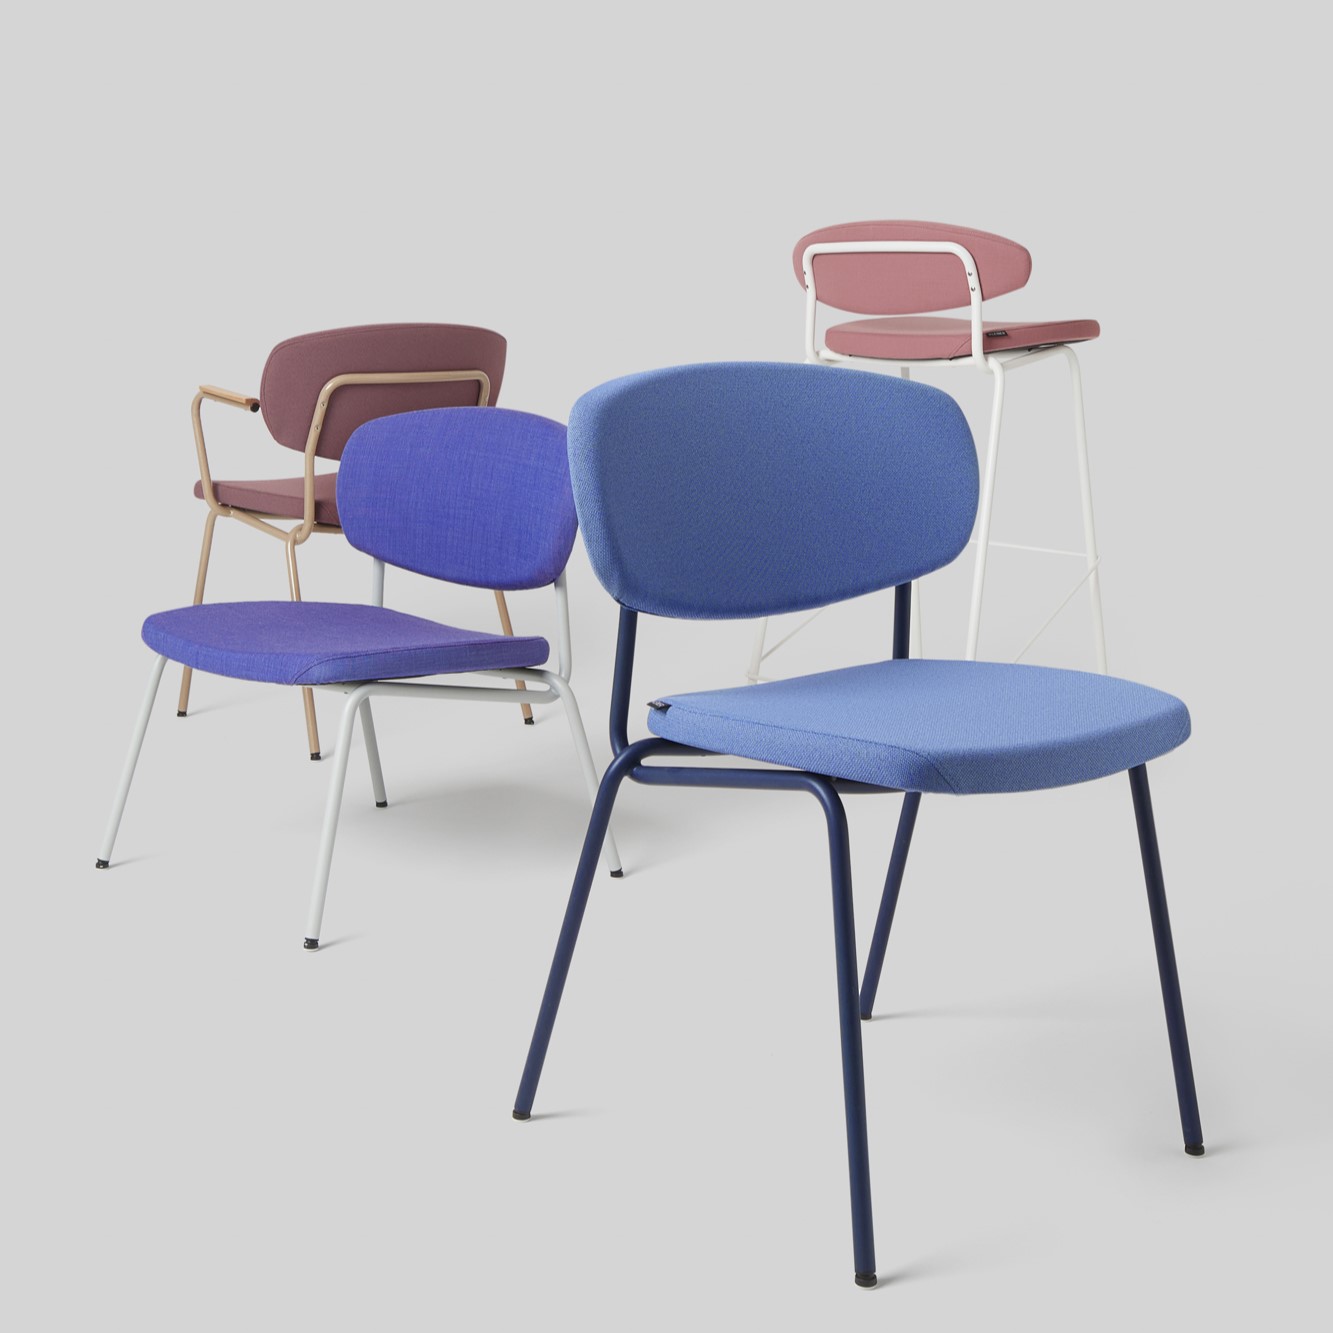 Gekleurde stoelen van de fabrikant Kleiber